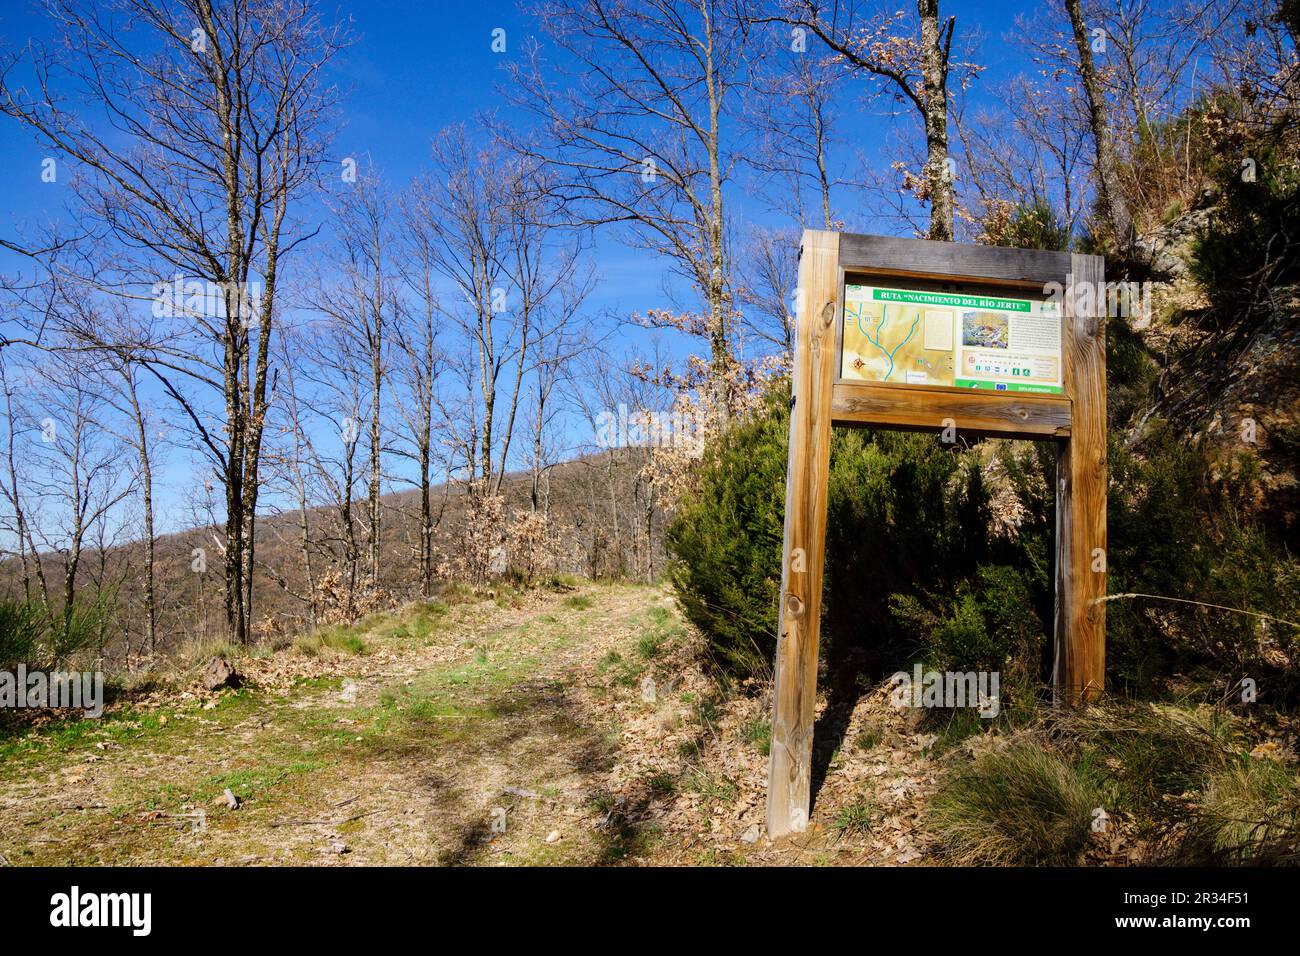 ruta del nacimiento del rio Jerte, reserva natural Garganta de los Infiernos, sierra de Gredos, valle del Jerte, Cáceres, Extremadura, Spain, europa. Stock Photo